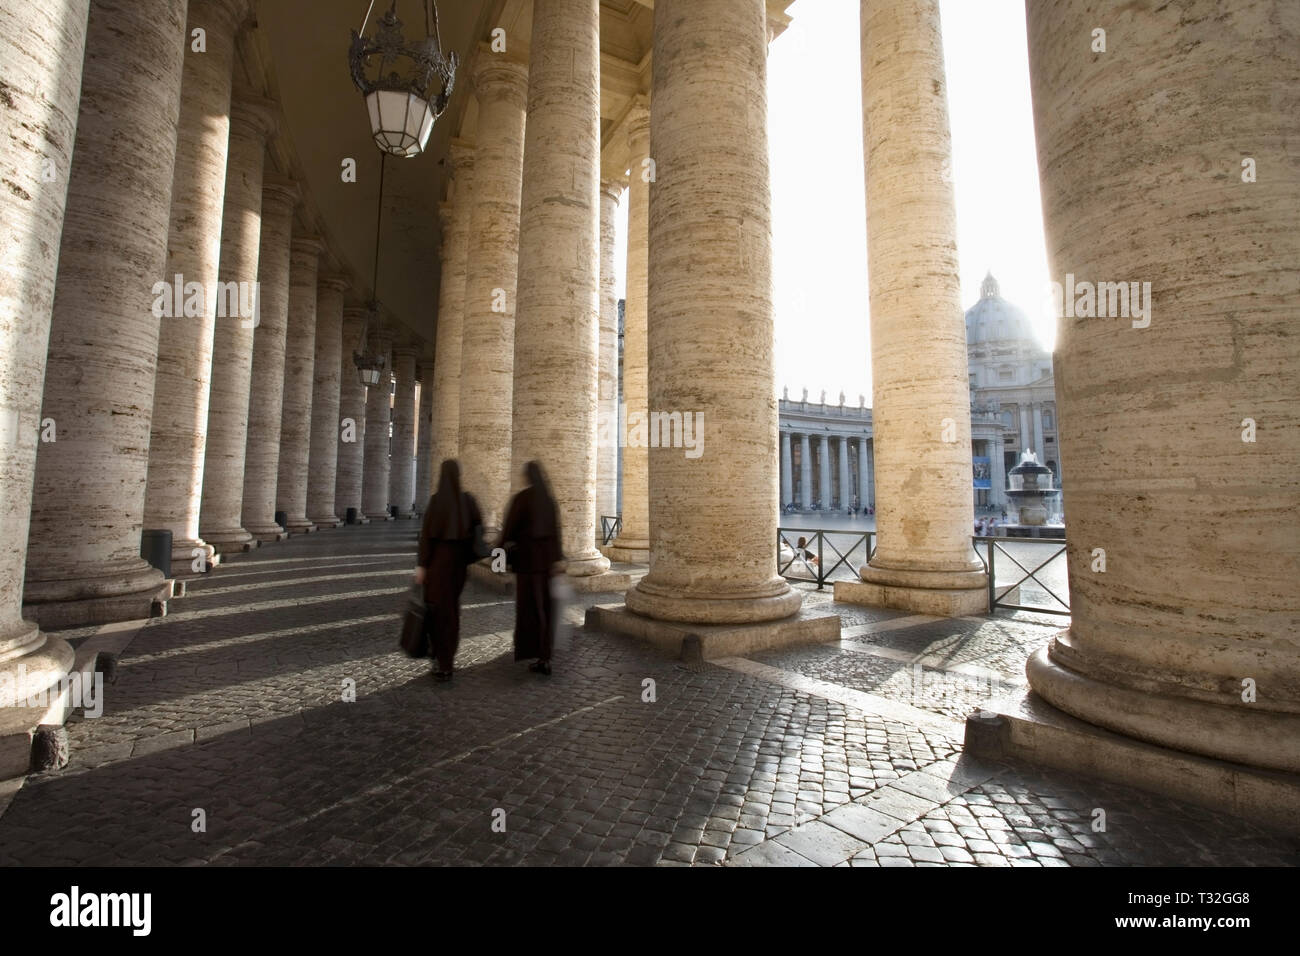 La Basilica di San Pietro dal colonnato del Bernini. Vaticano, Roma, Italia. Foto Stock